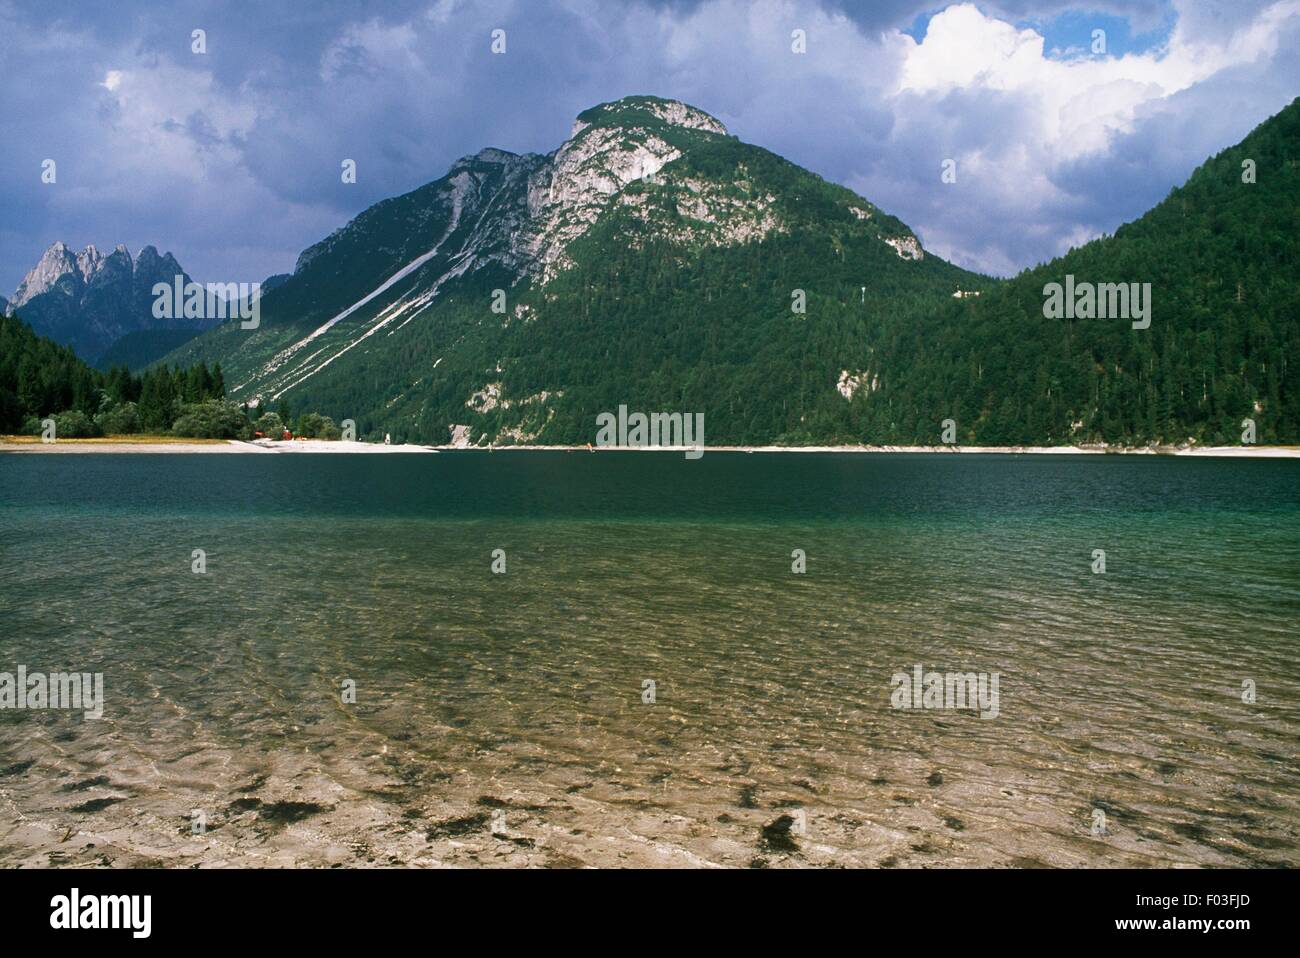 Predil (or Raibl) Lake, in Rio del Lago valley, Forest of Tarvisio, Friuli-Venezia Giulia, Italy. Stock Photo